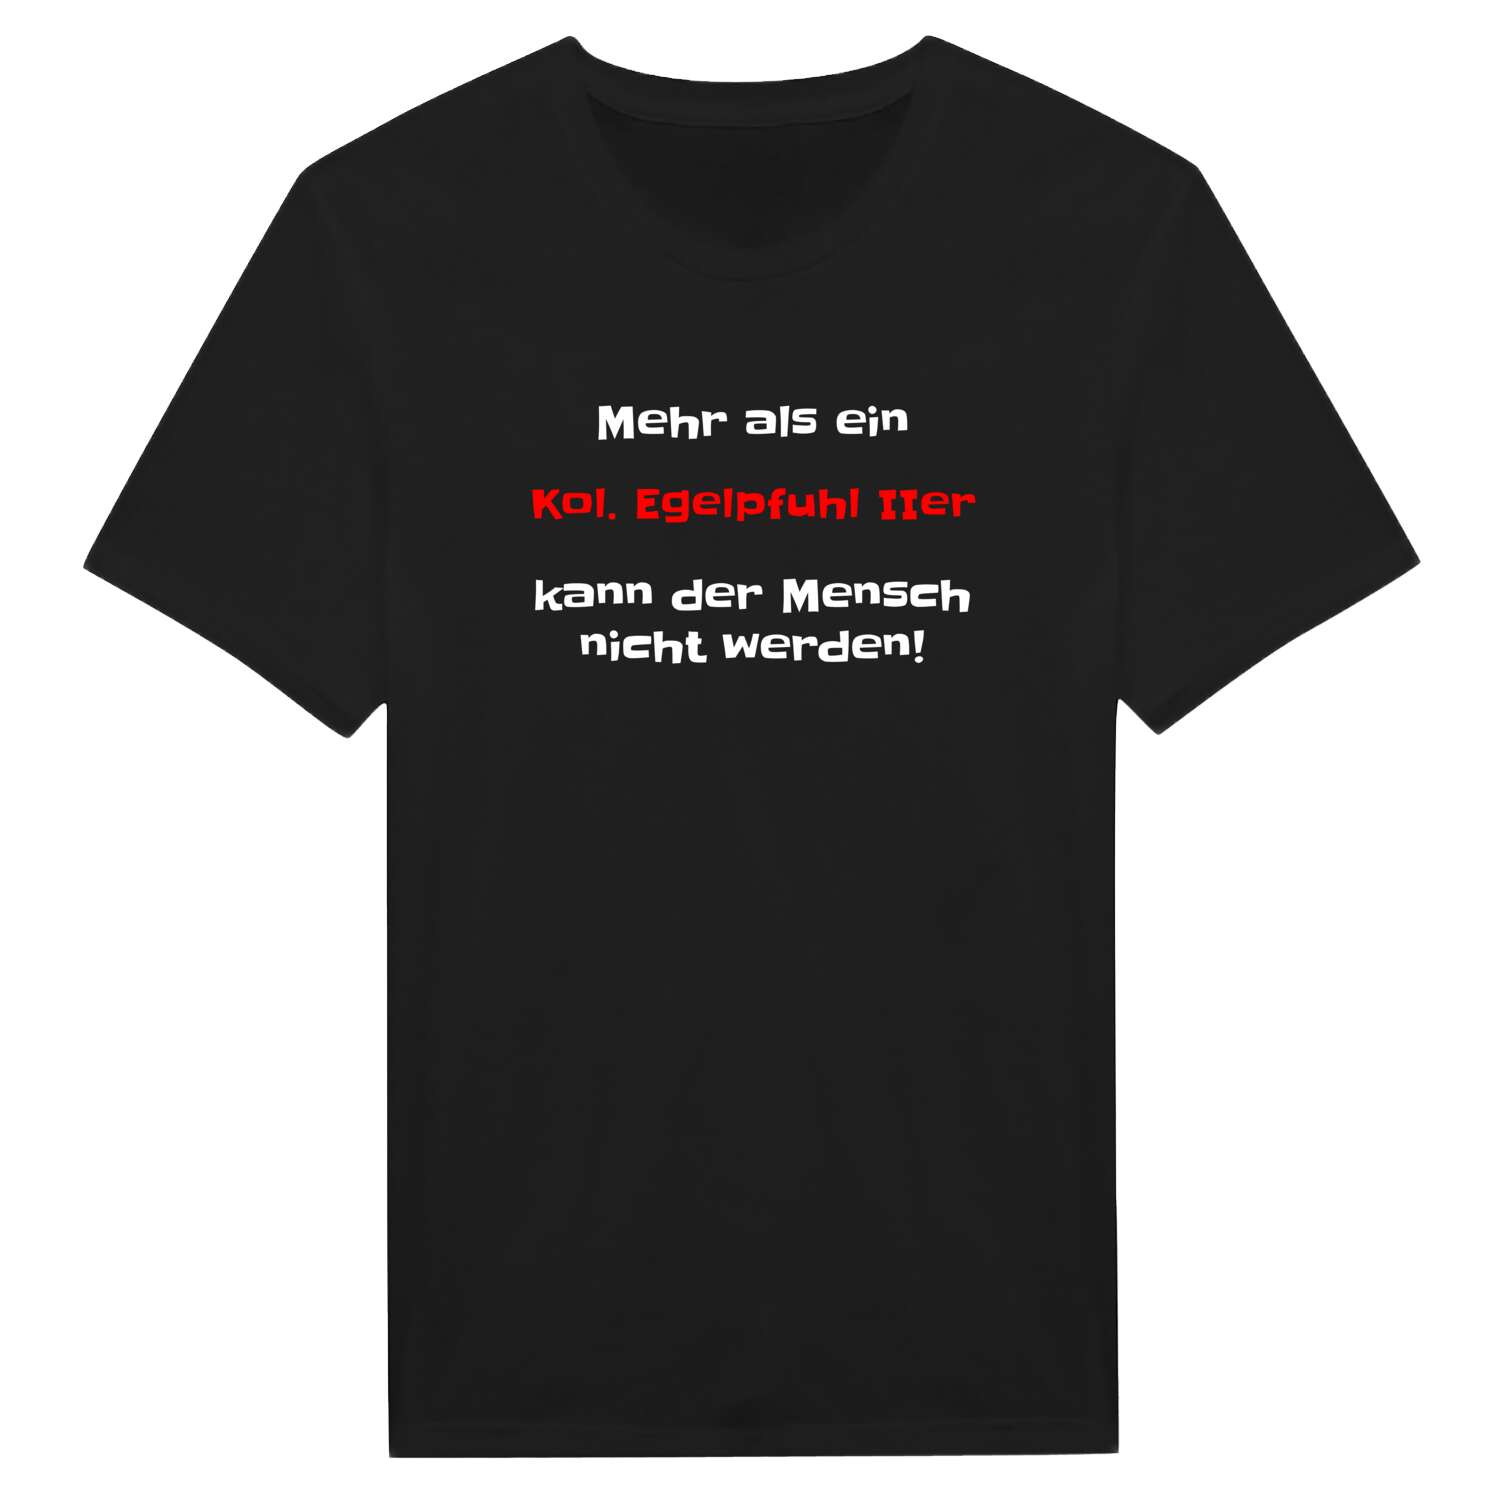 Kol. Egelpfuhl II T-Shirt »Mehr als ein«